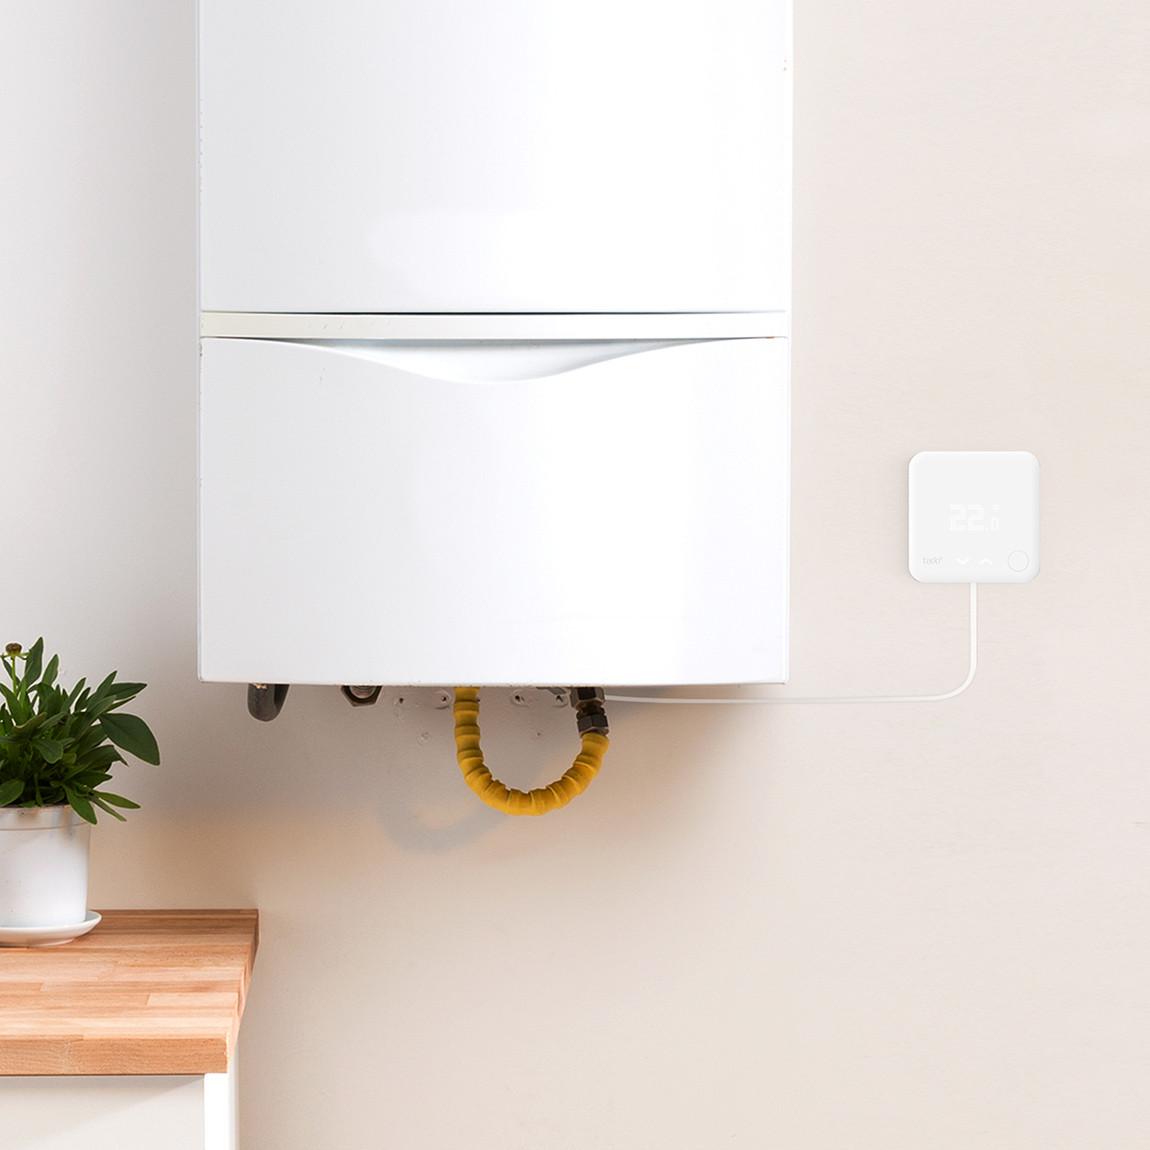 tado° Smartes Thermostat für Heizkessel, Gasetagenheizungen und Fußbodenheizungen - White